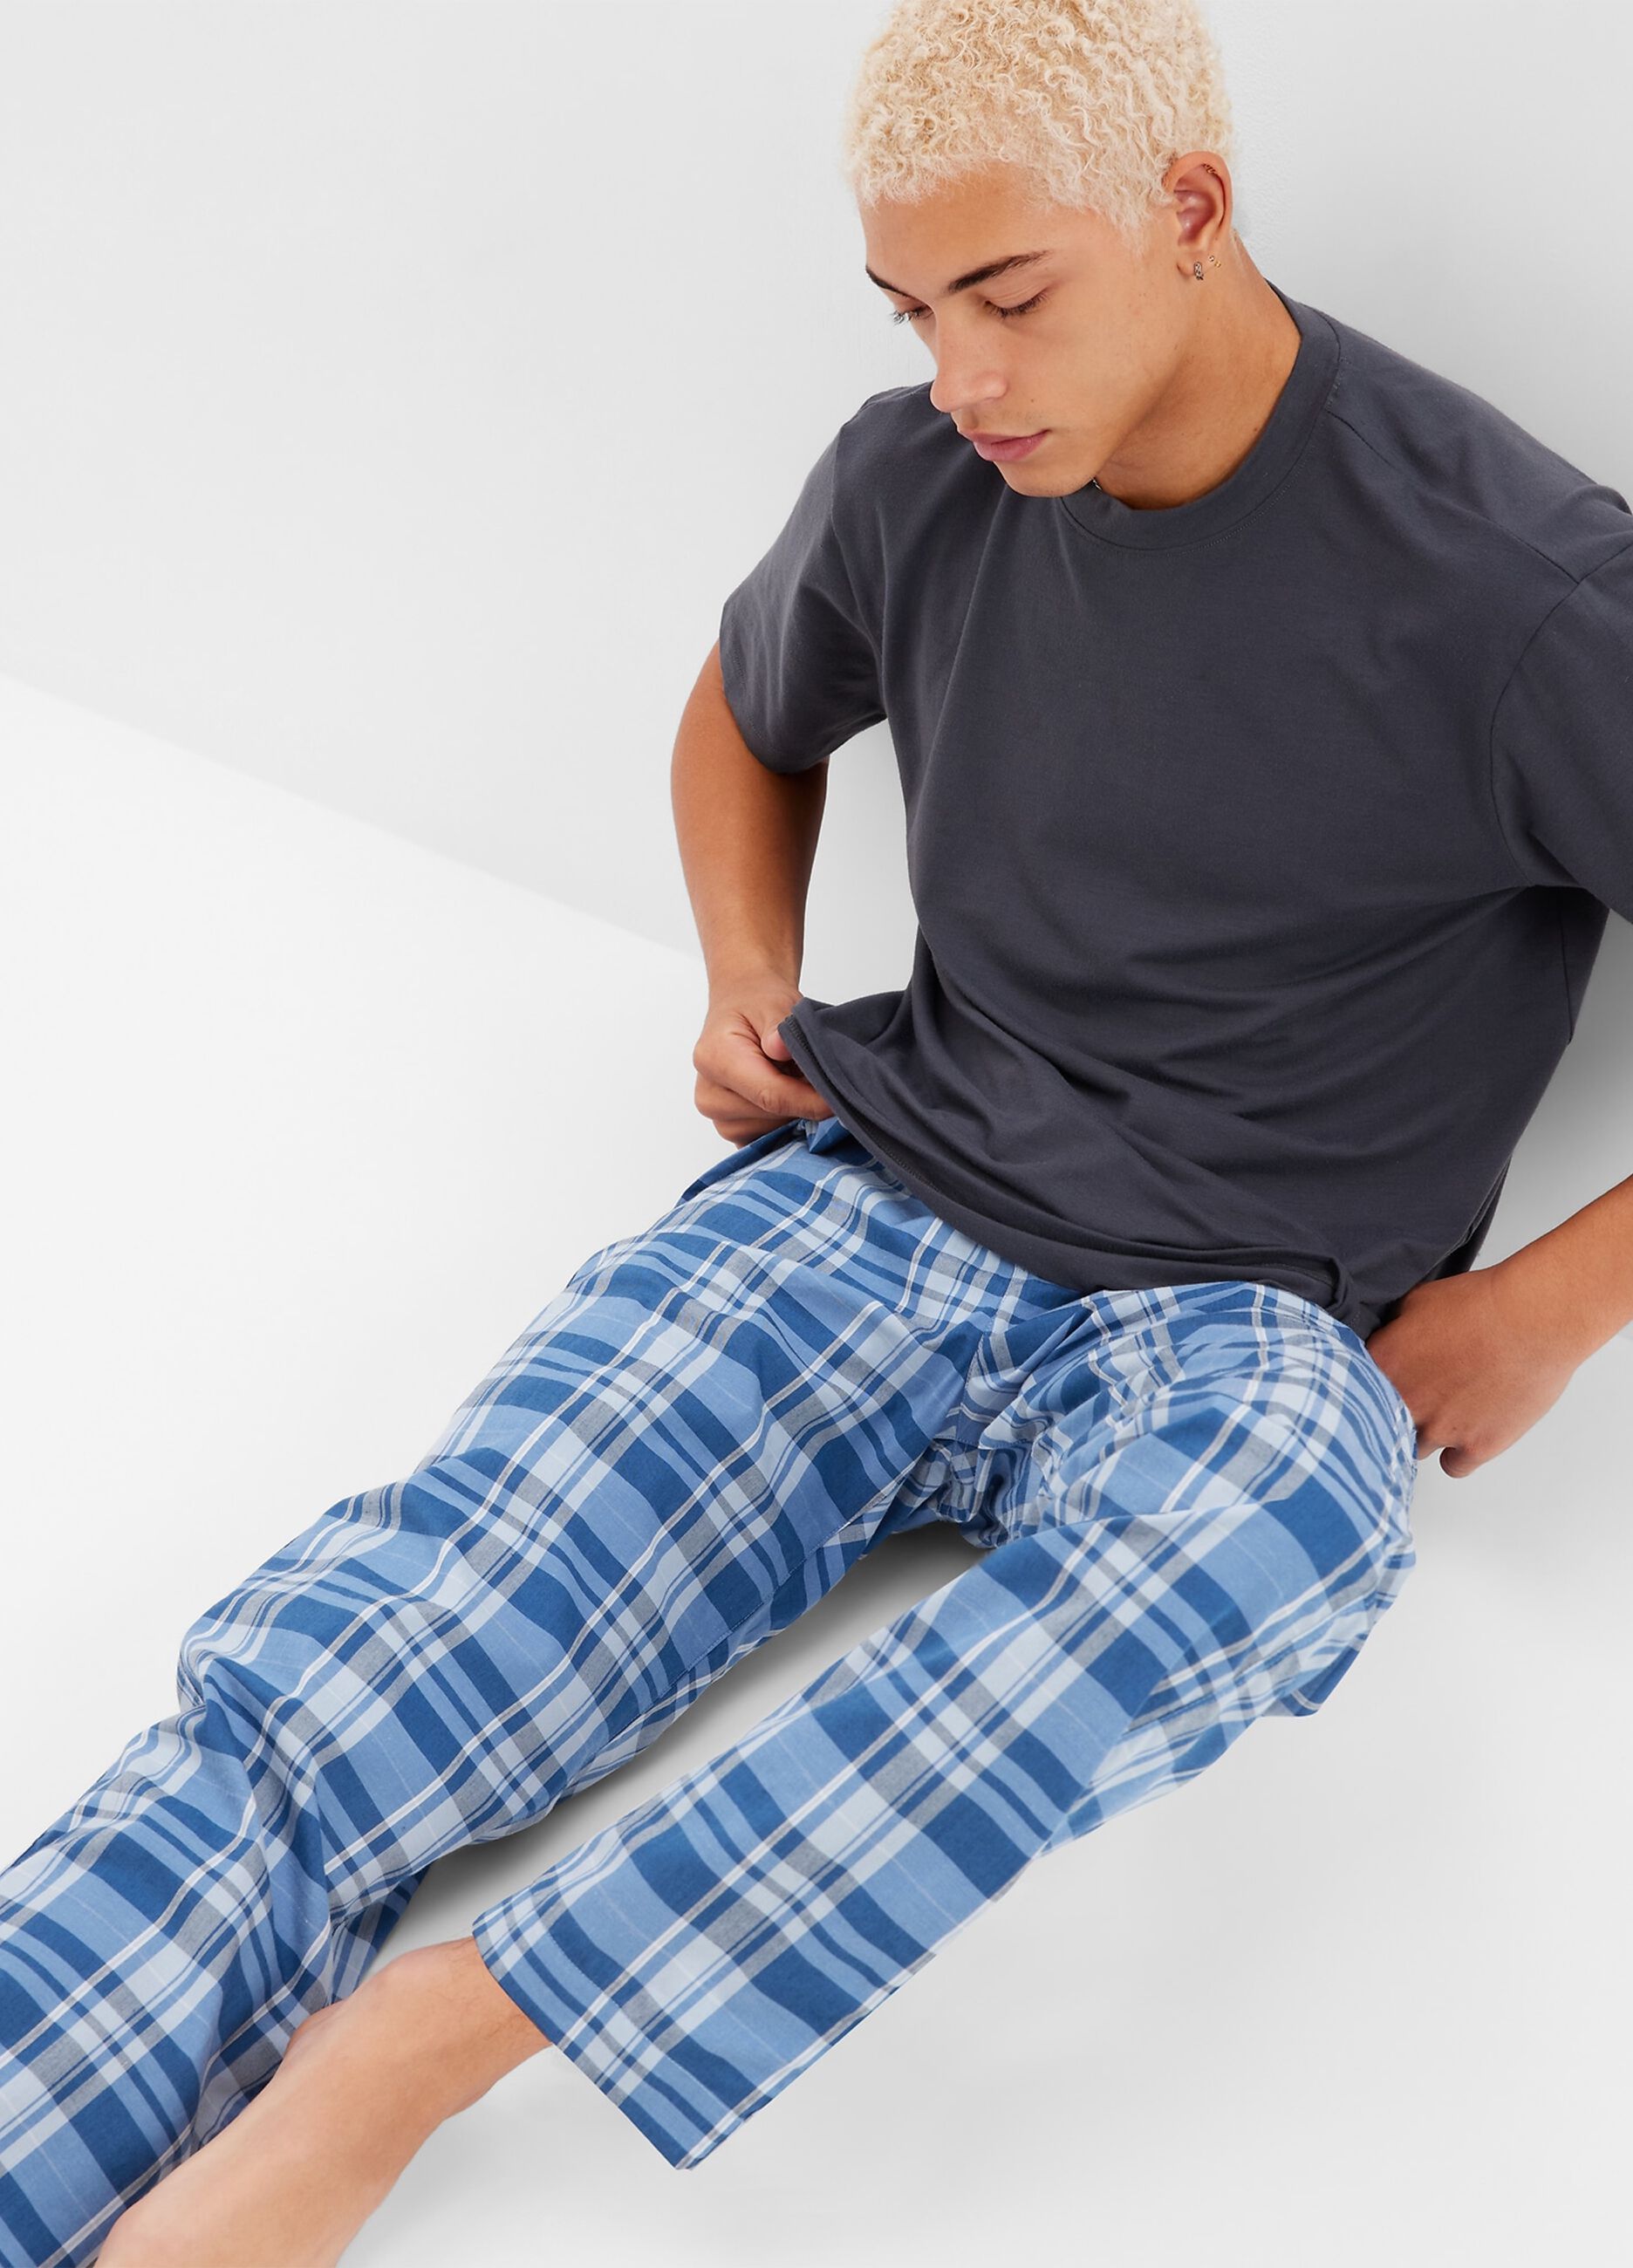 Pyjama bottoms with check print